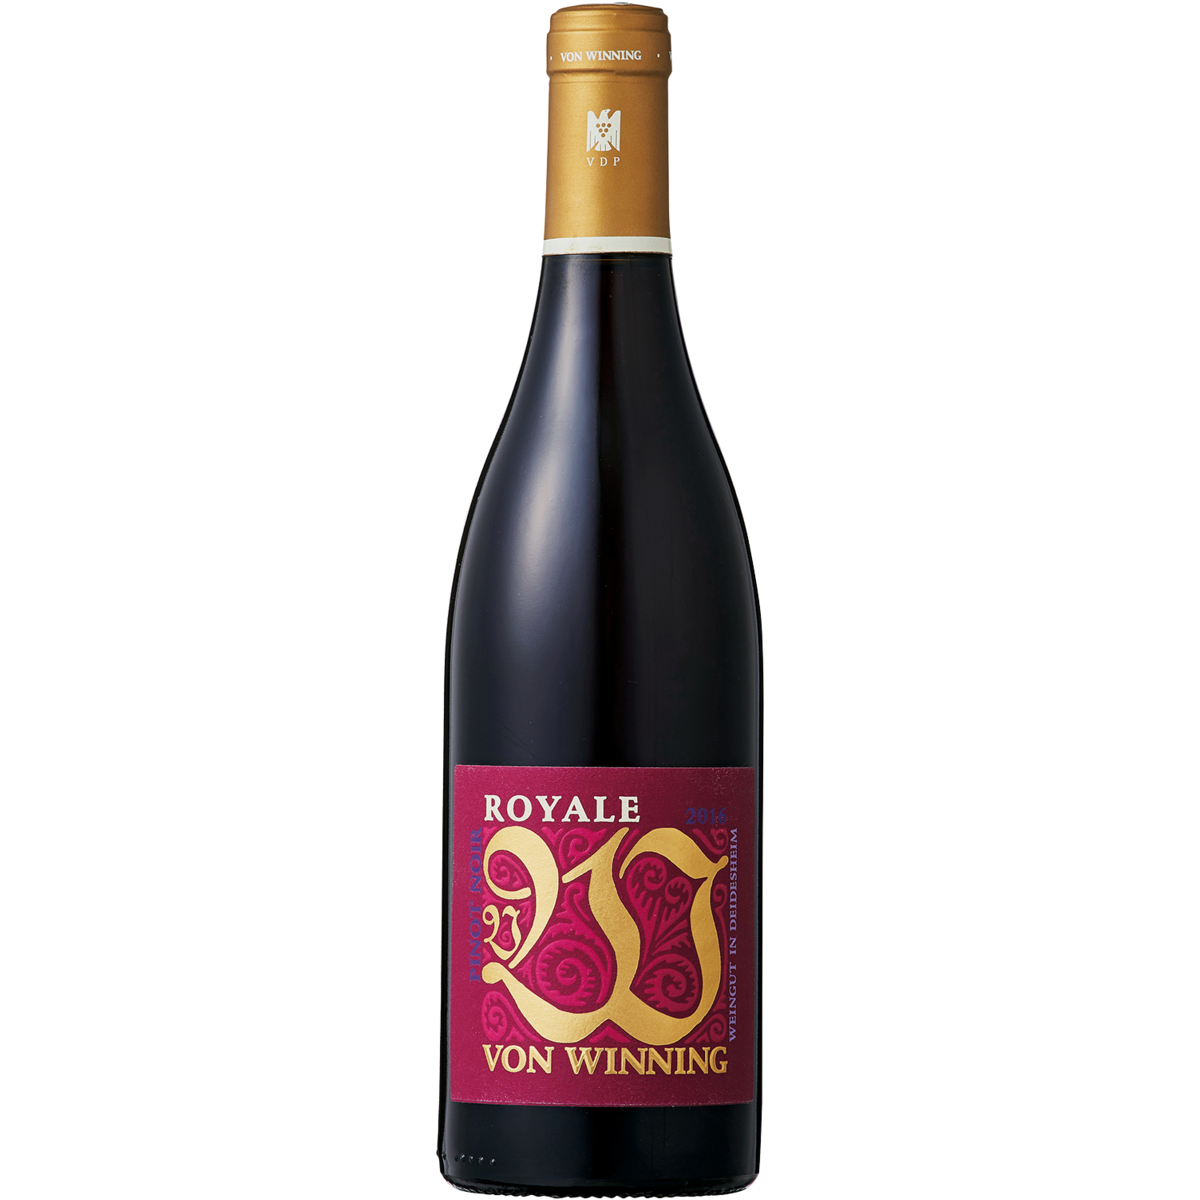 Von Winning Pinot Noir Royale Trocken VDP Gutwein